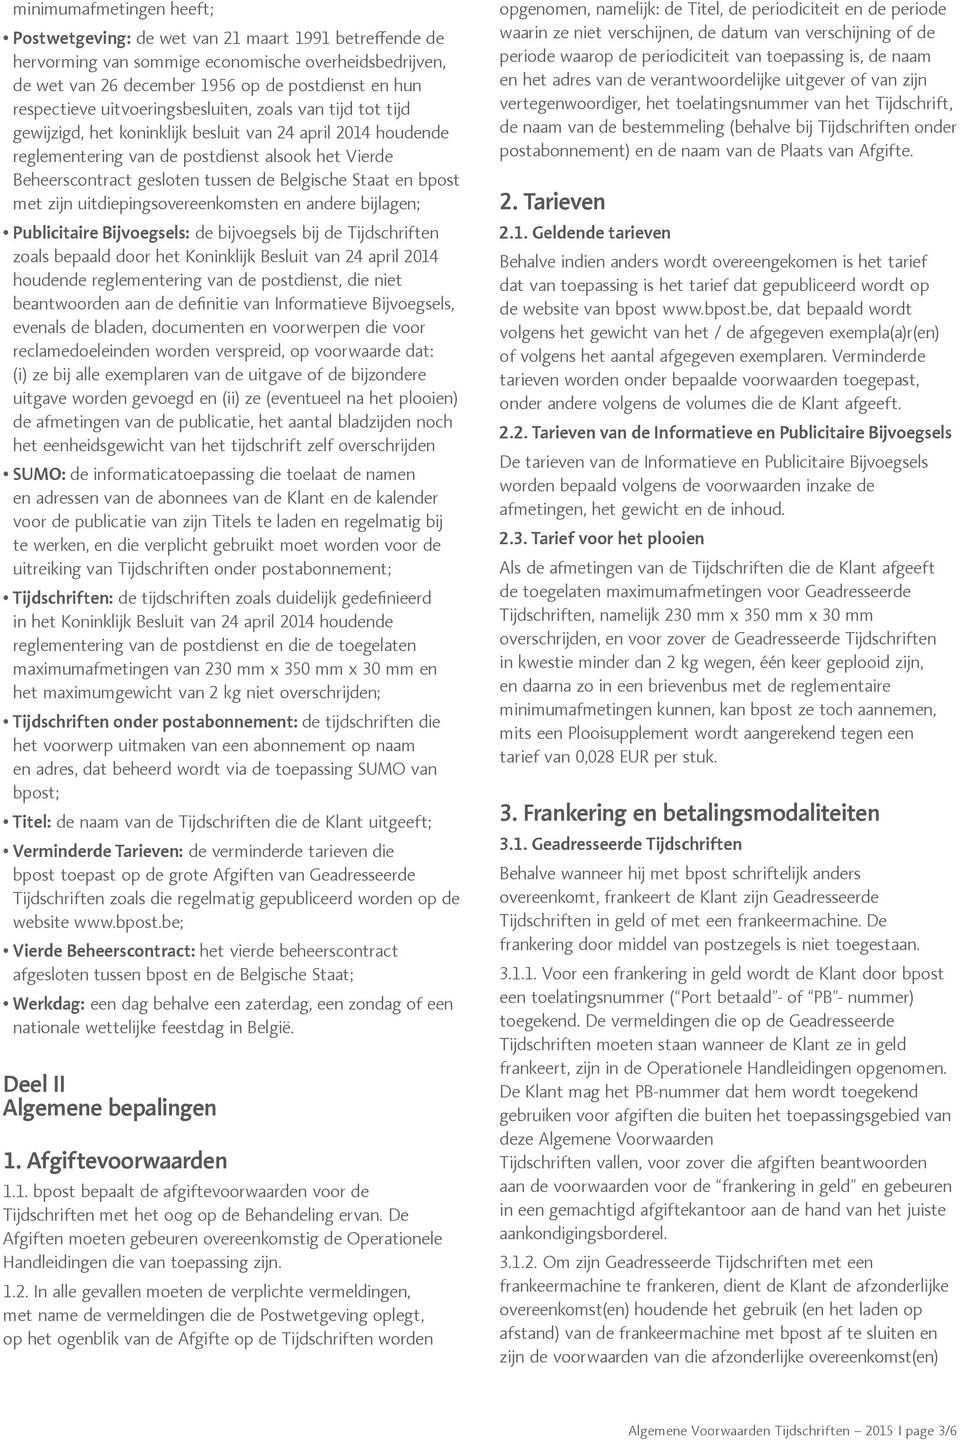 Belgische Staat en bpost met zijn uitdiepingsovereenkomsten en andere bijlagen; Publicitaire Bijvoegsels: de bijvoegsels bij de Tijdschriften zoals bepaald door het Koninklijk Besluit van 24 april